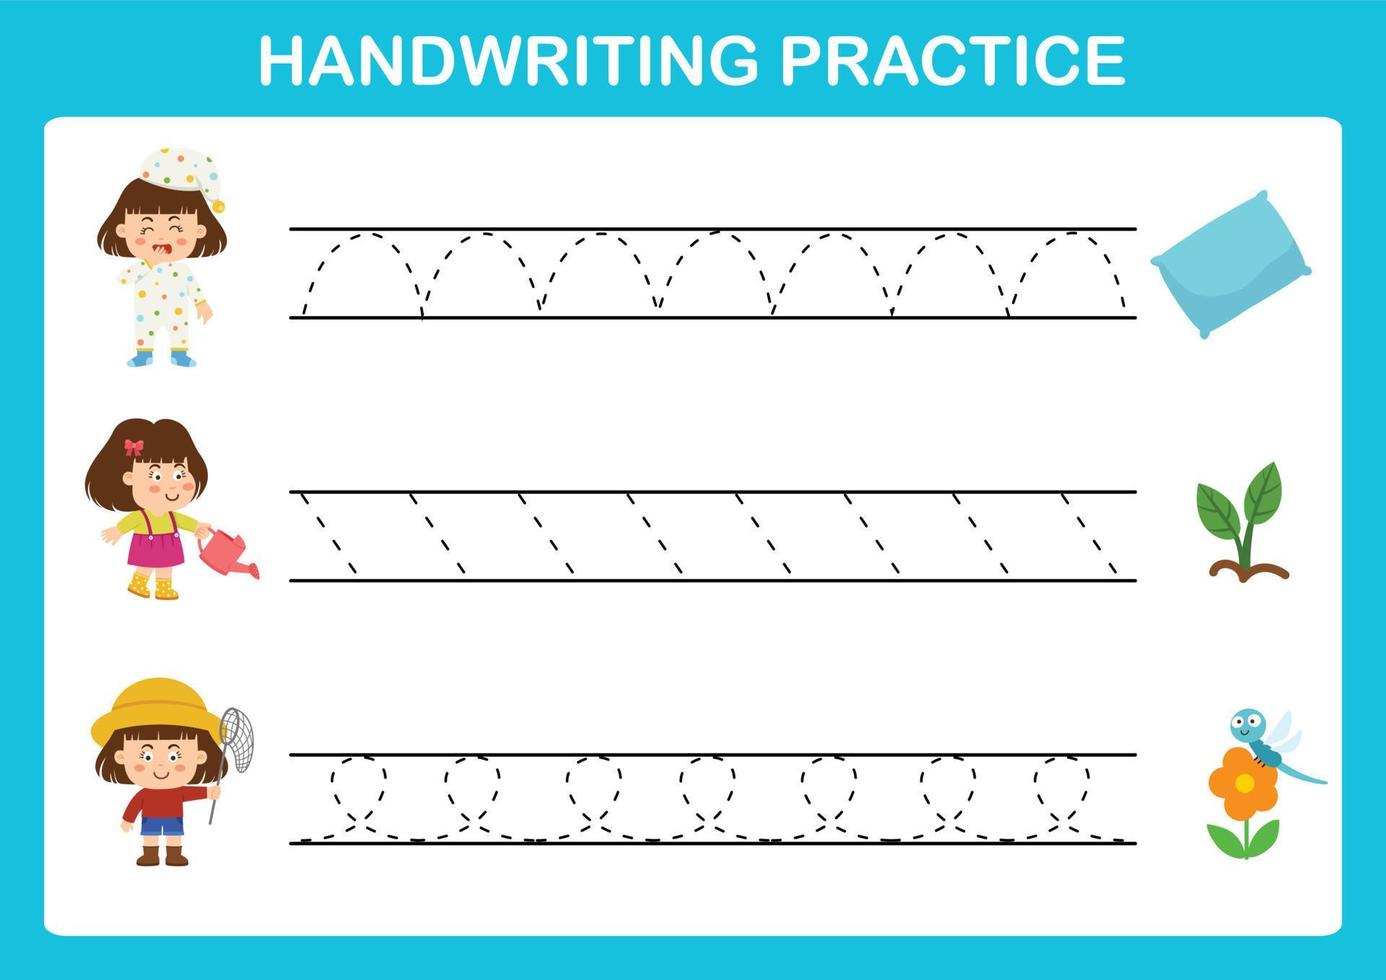 vector de ilustración de hoja de práctica de escritura a mano